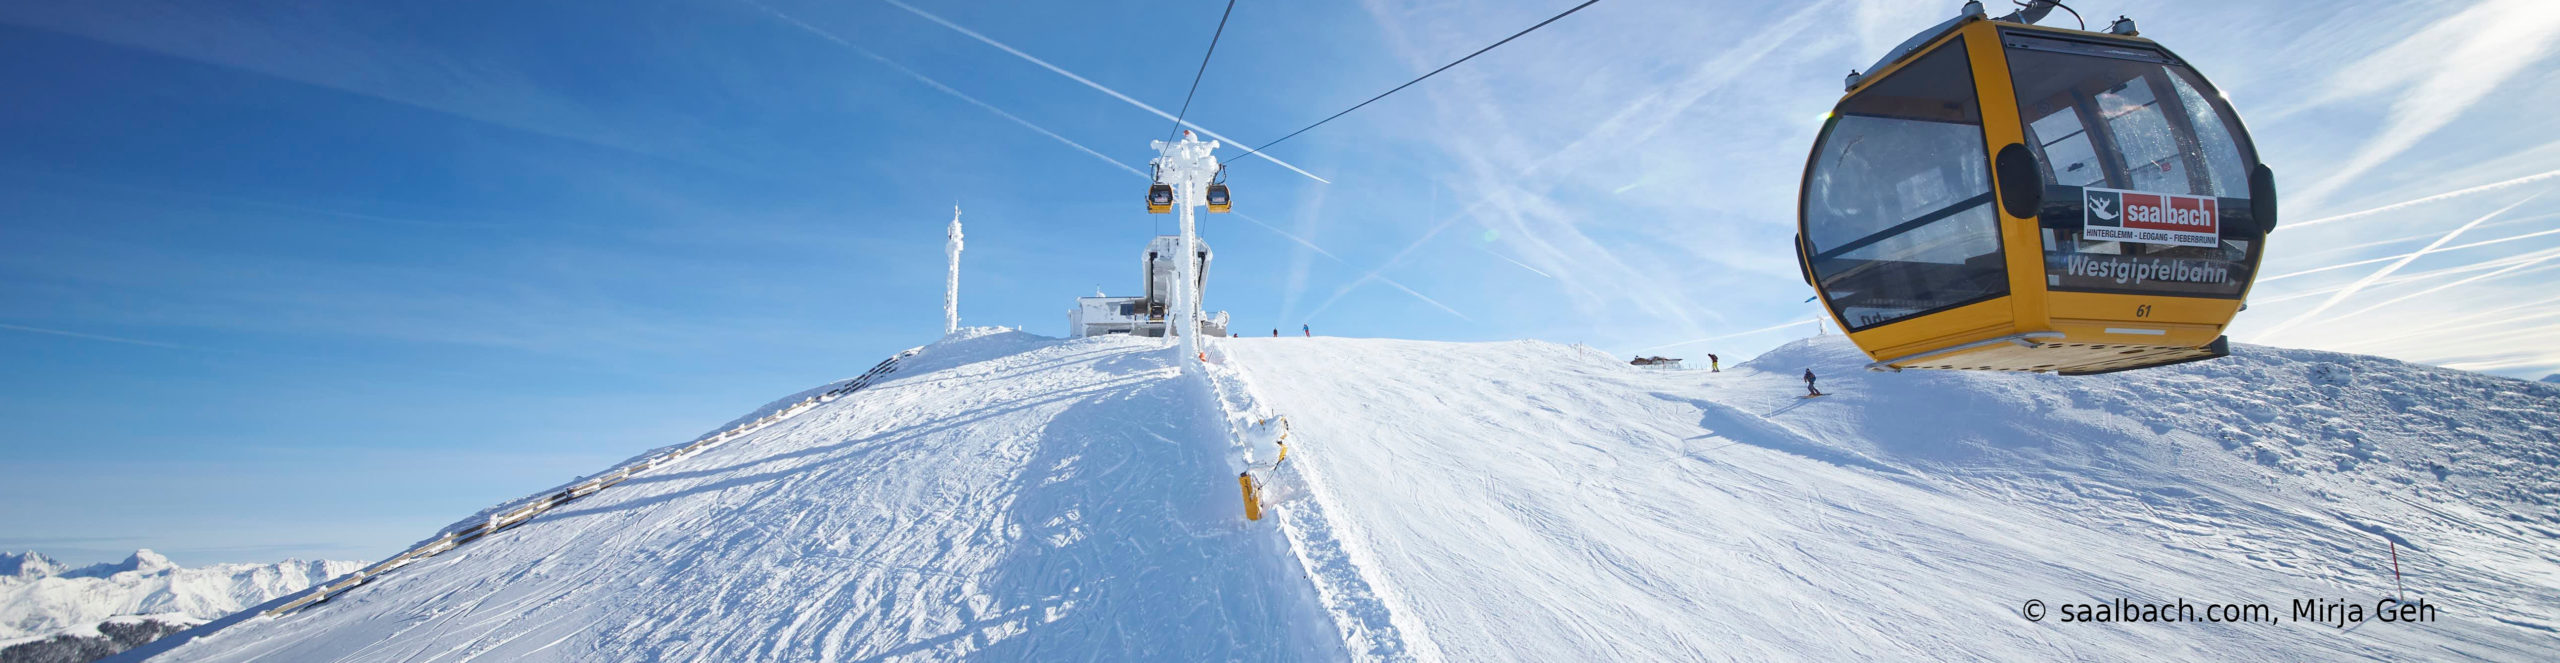 SAALBACH HINTERGLEMM – Skiwochenende nah an der Gondel – mit 3 vollen Skitagen ab Freitag früh 